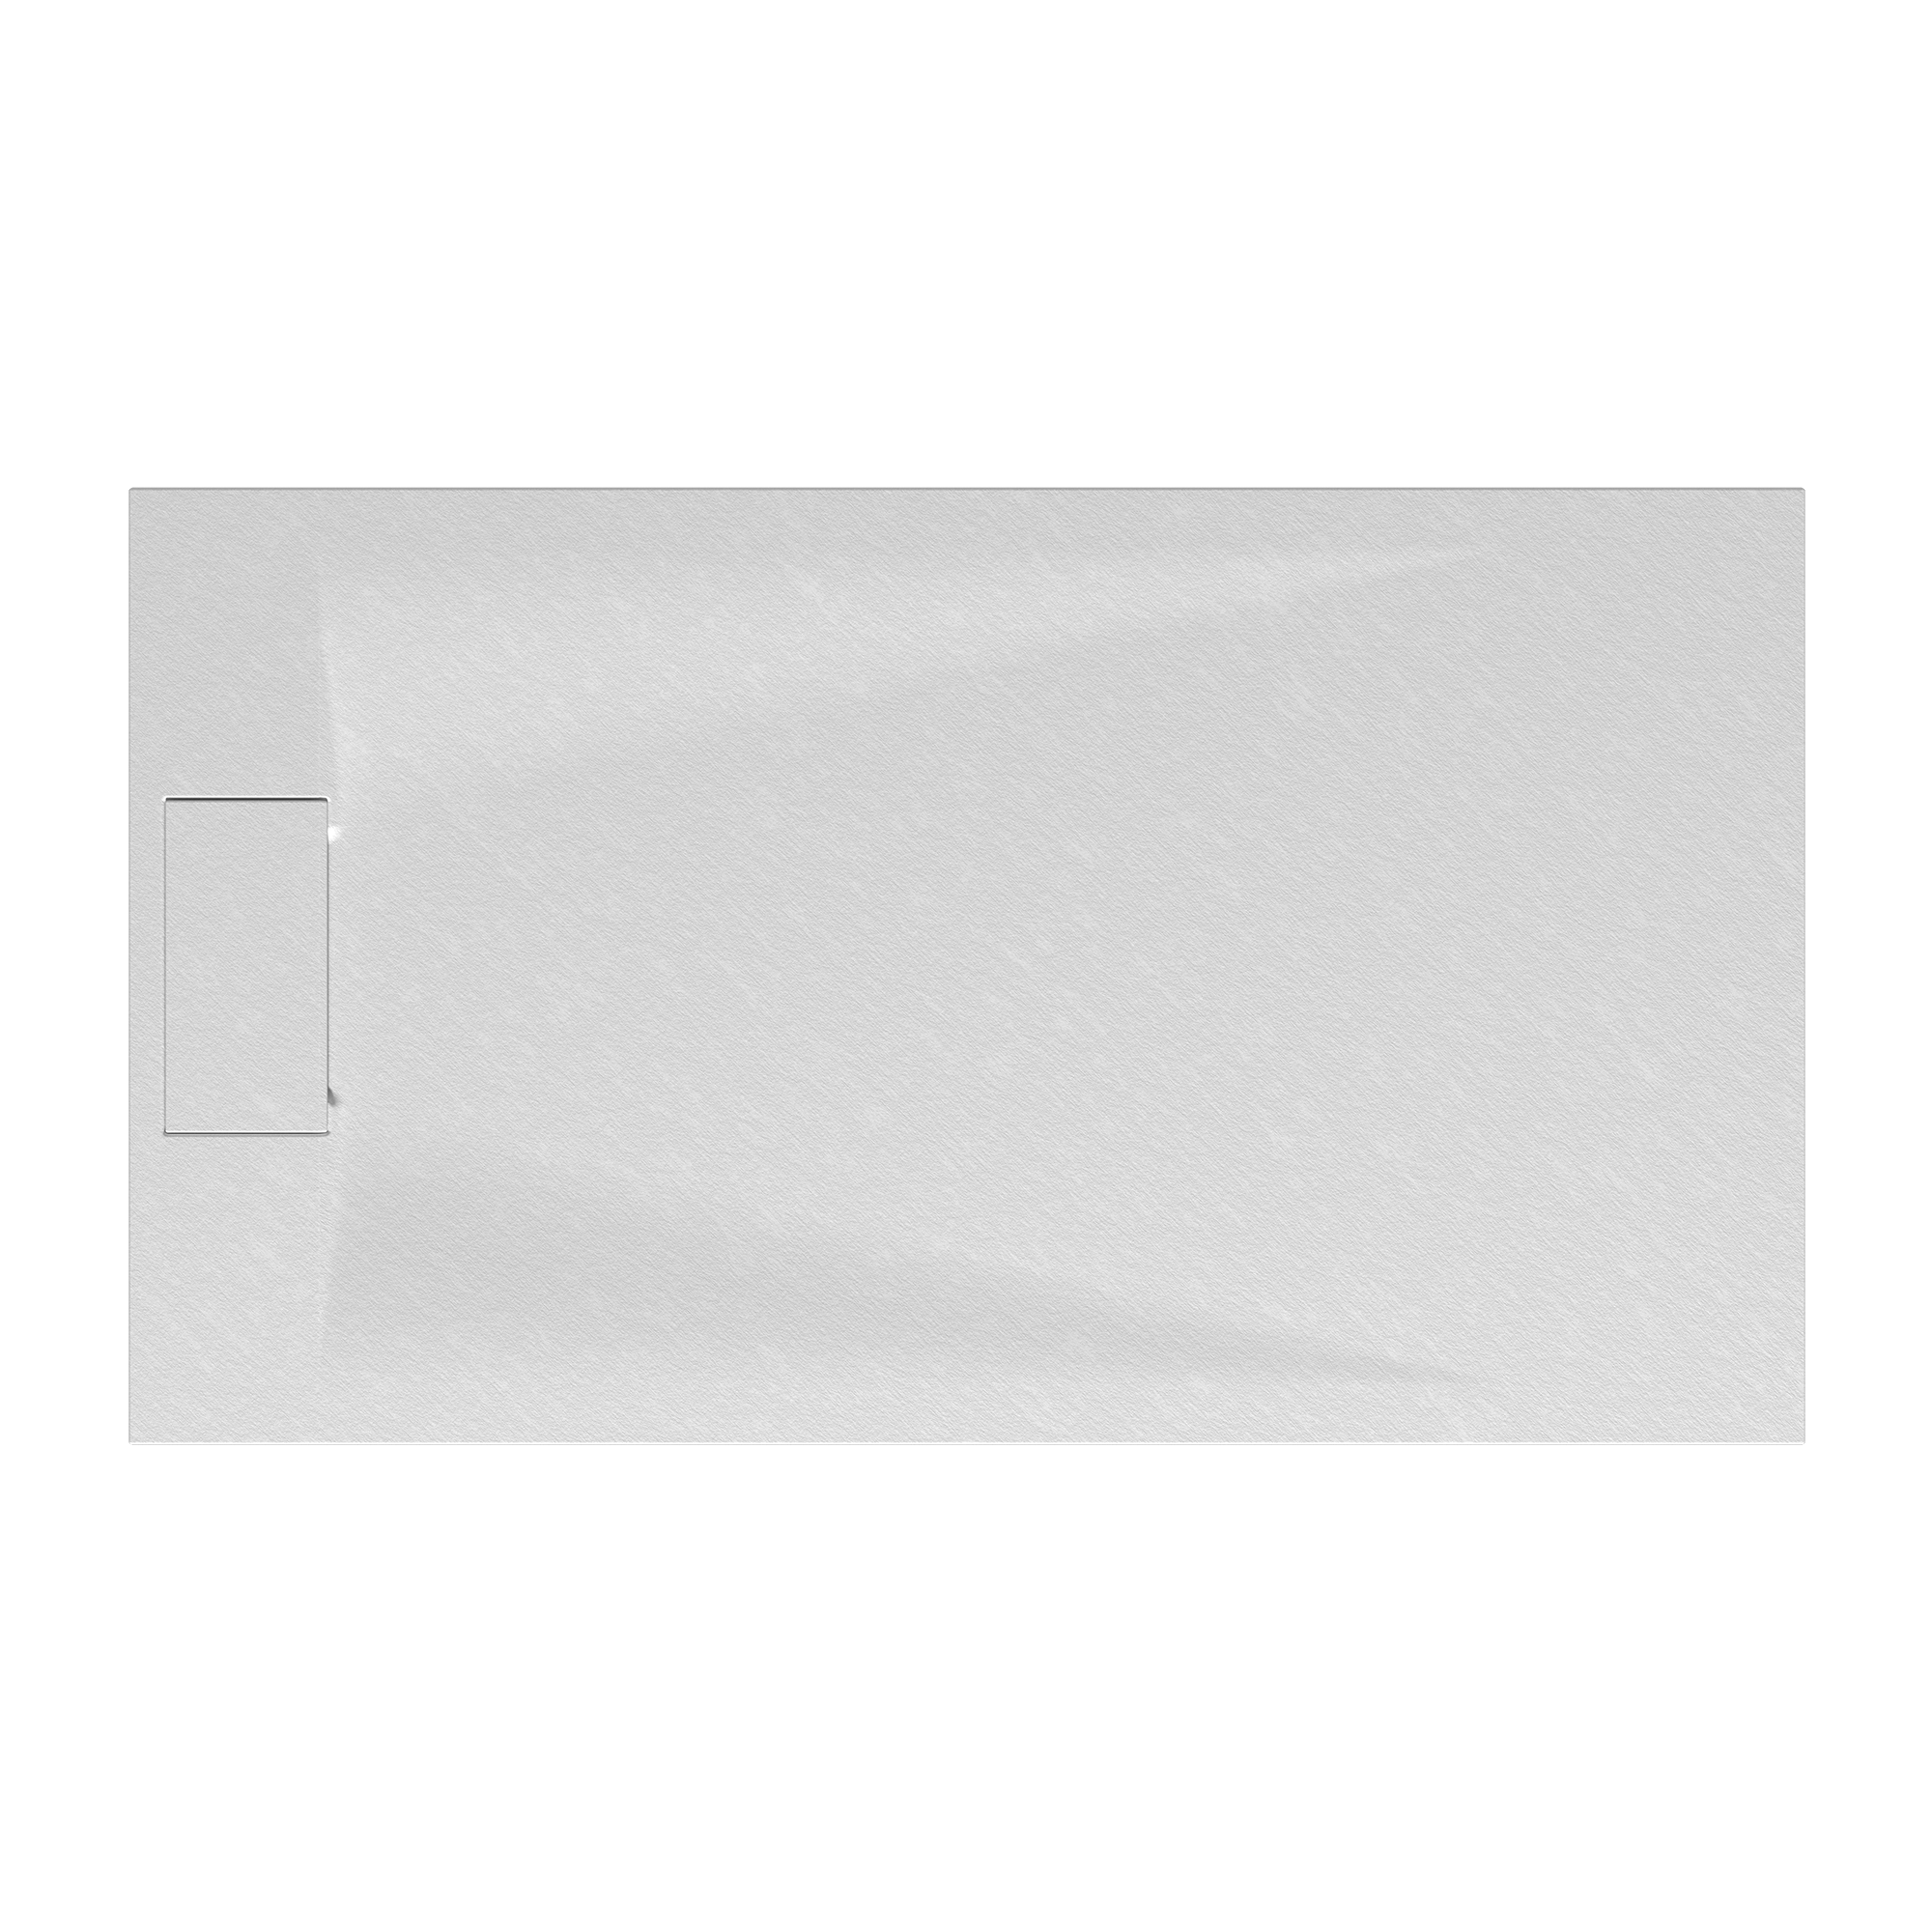 Duschwanne 'Lite Line/Quick72' Steinoptik weiß 80 x 160 cm + product picture